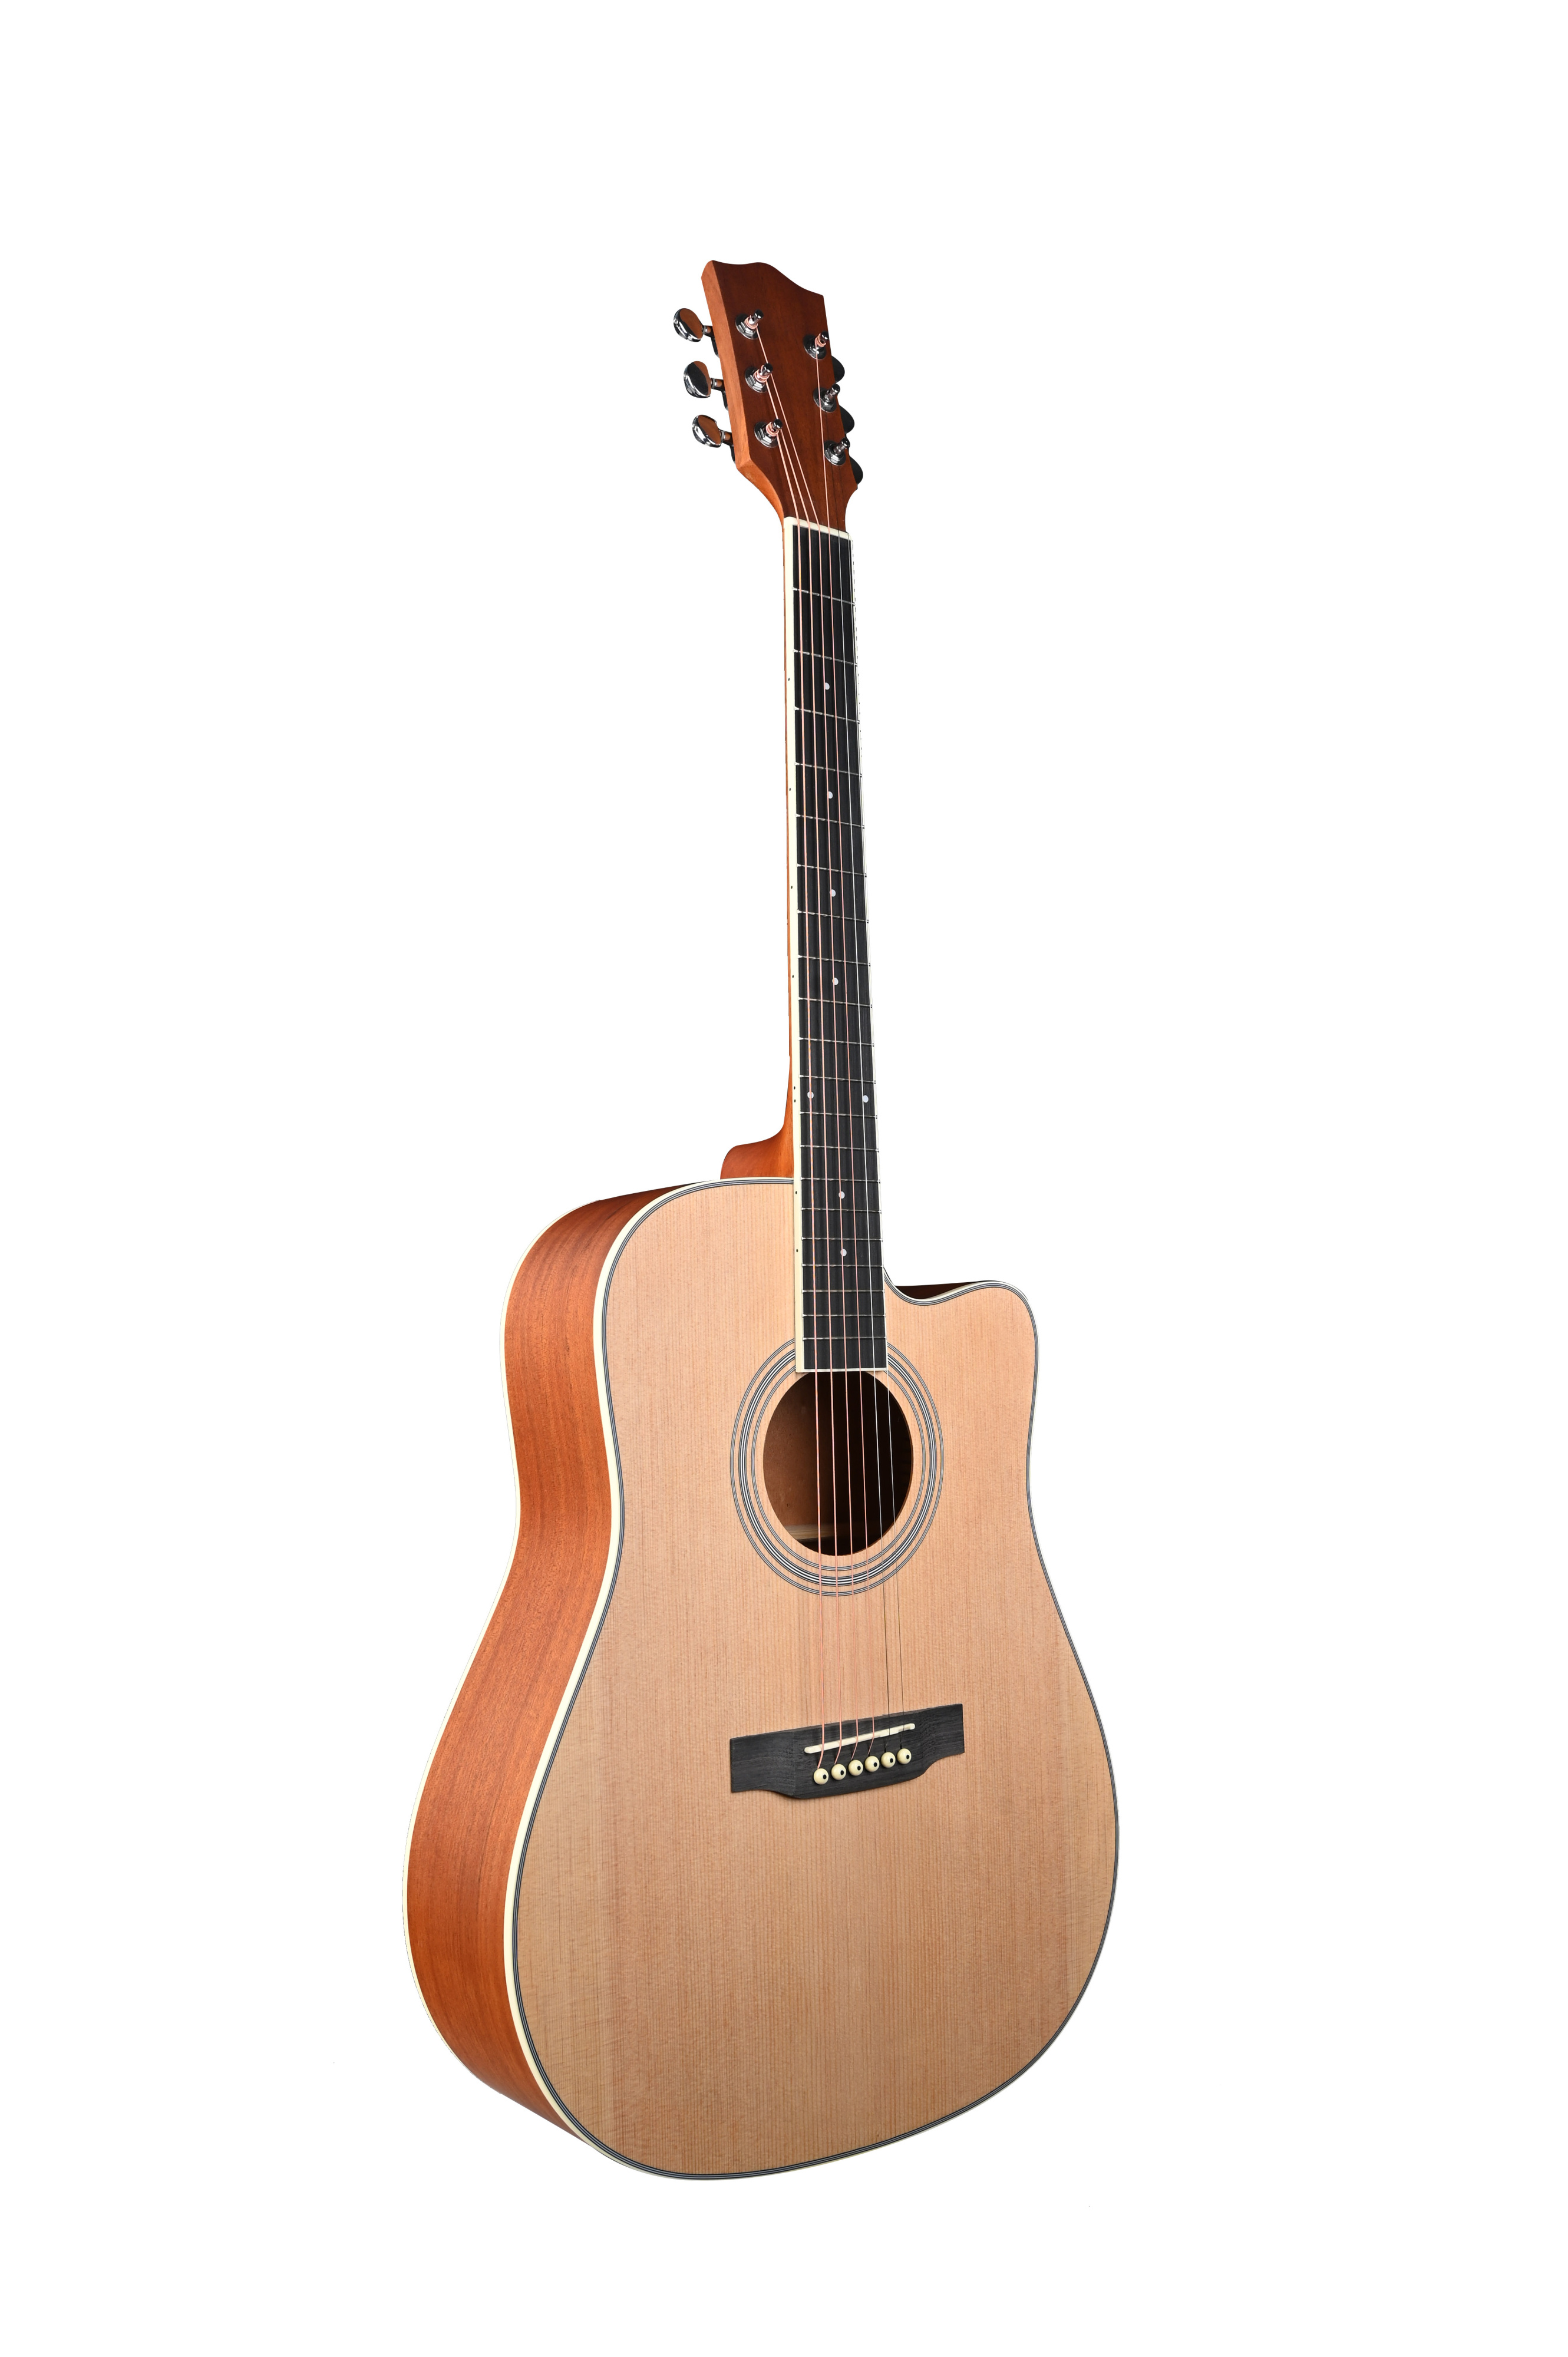 Акустические гитары Fante BH-41SM гитара акустическая дерево 97см с вырезом